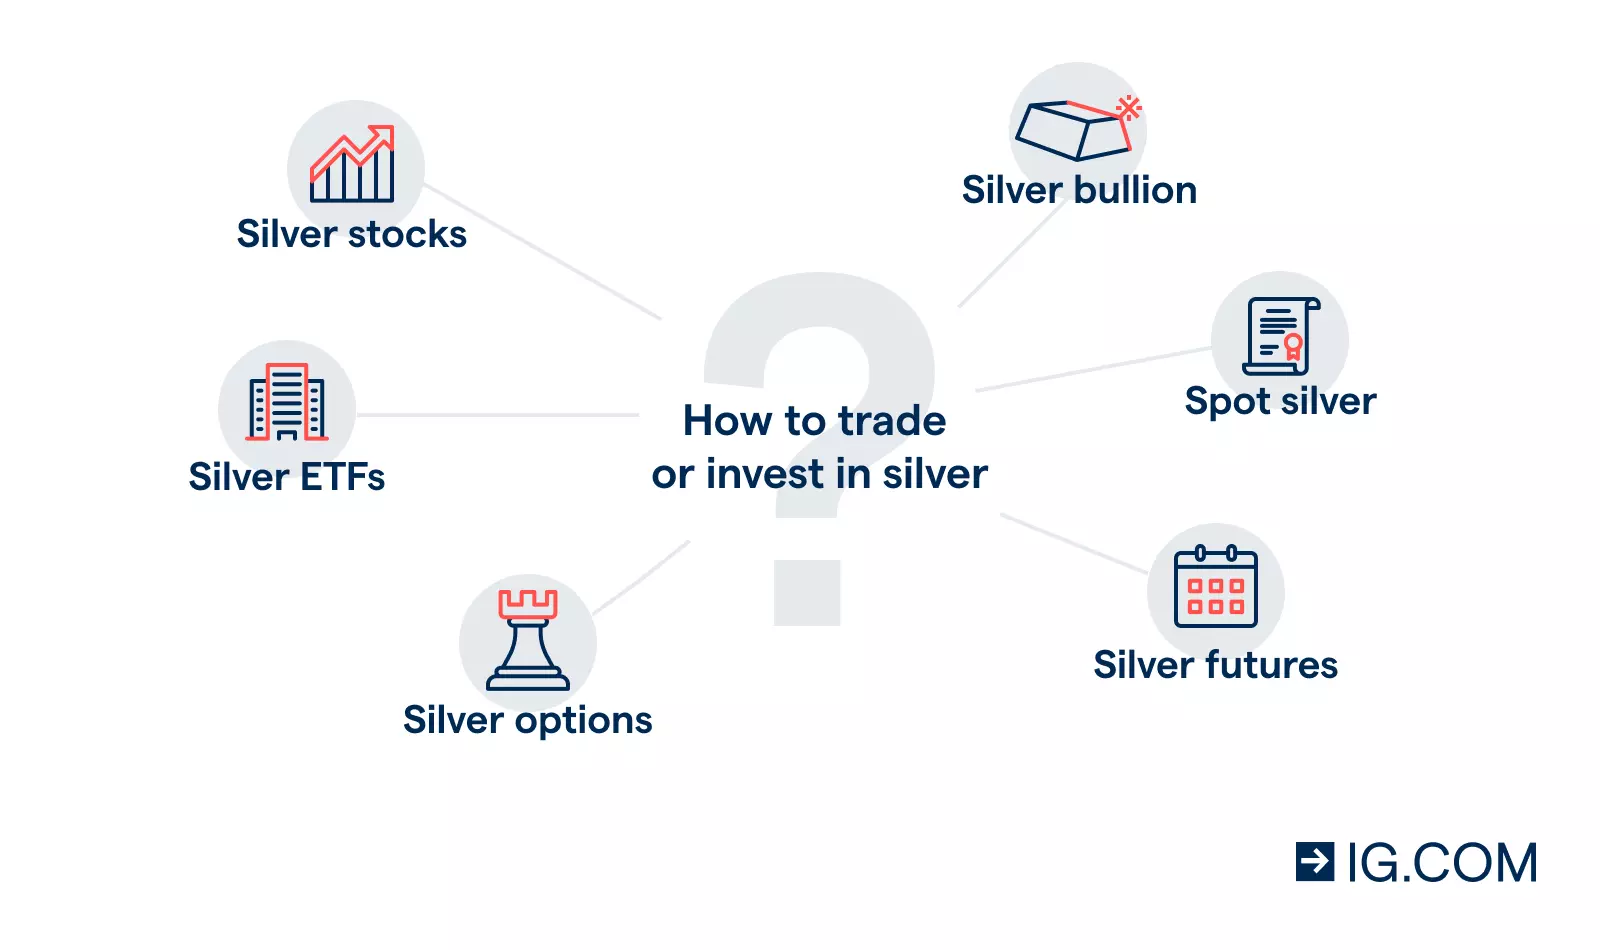 Icônes représentant les actions liées à l'argent, l'argent physique, les ETF, options et futures autour de la légende "Comment trader ou investir dans l'argent".